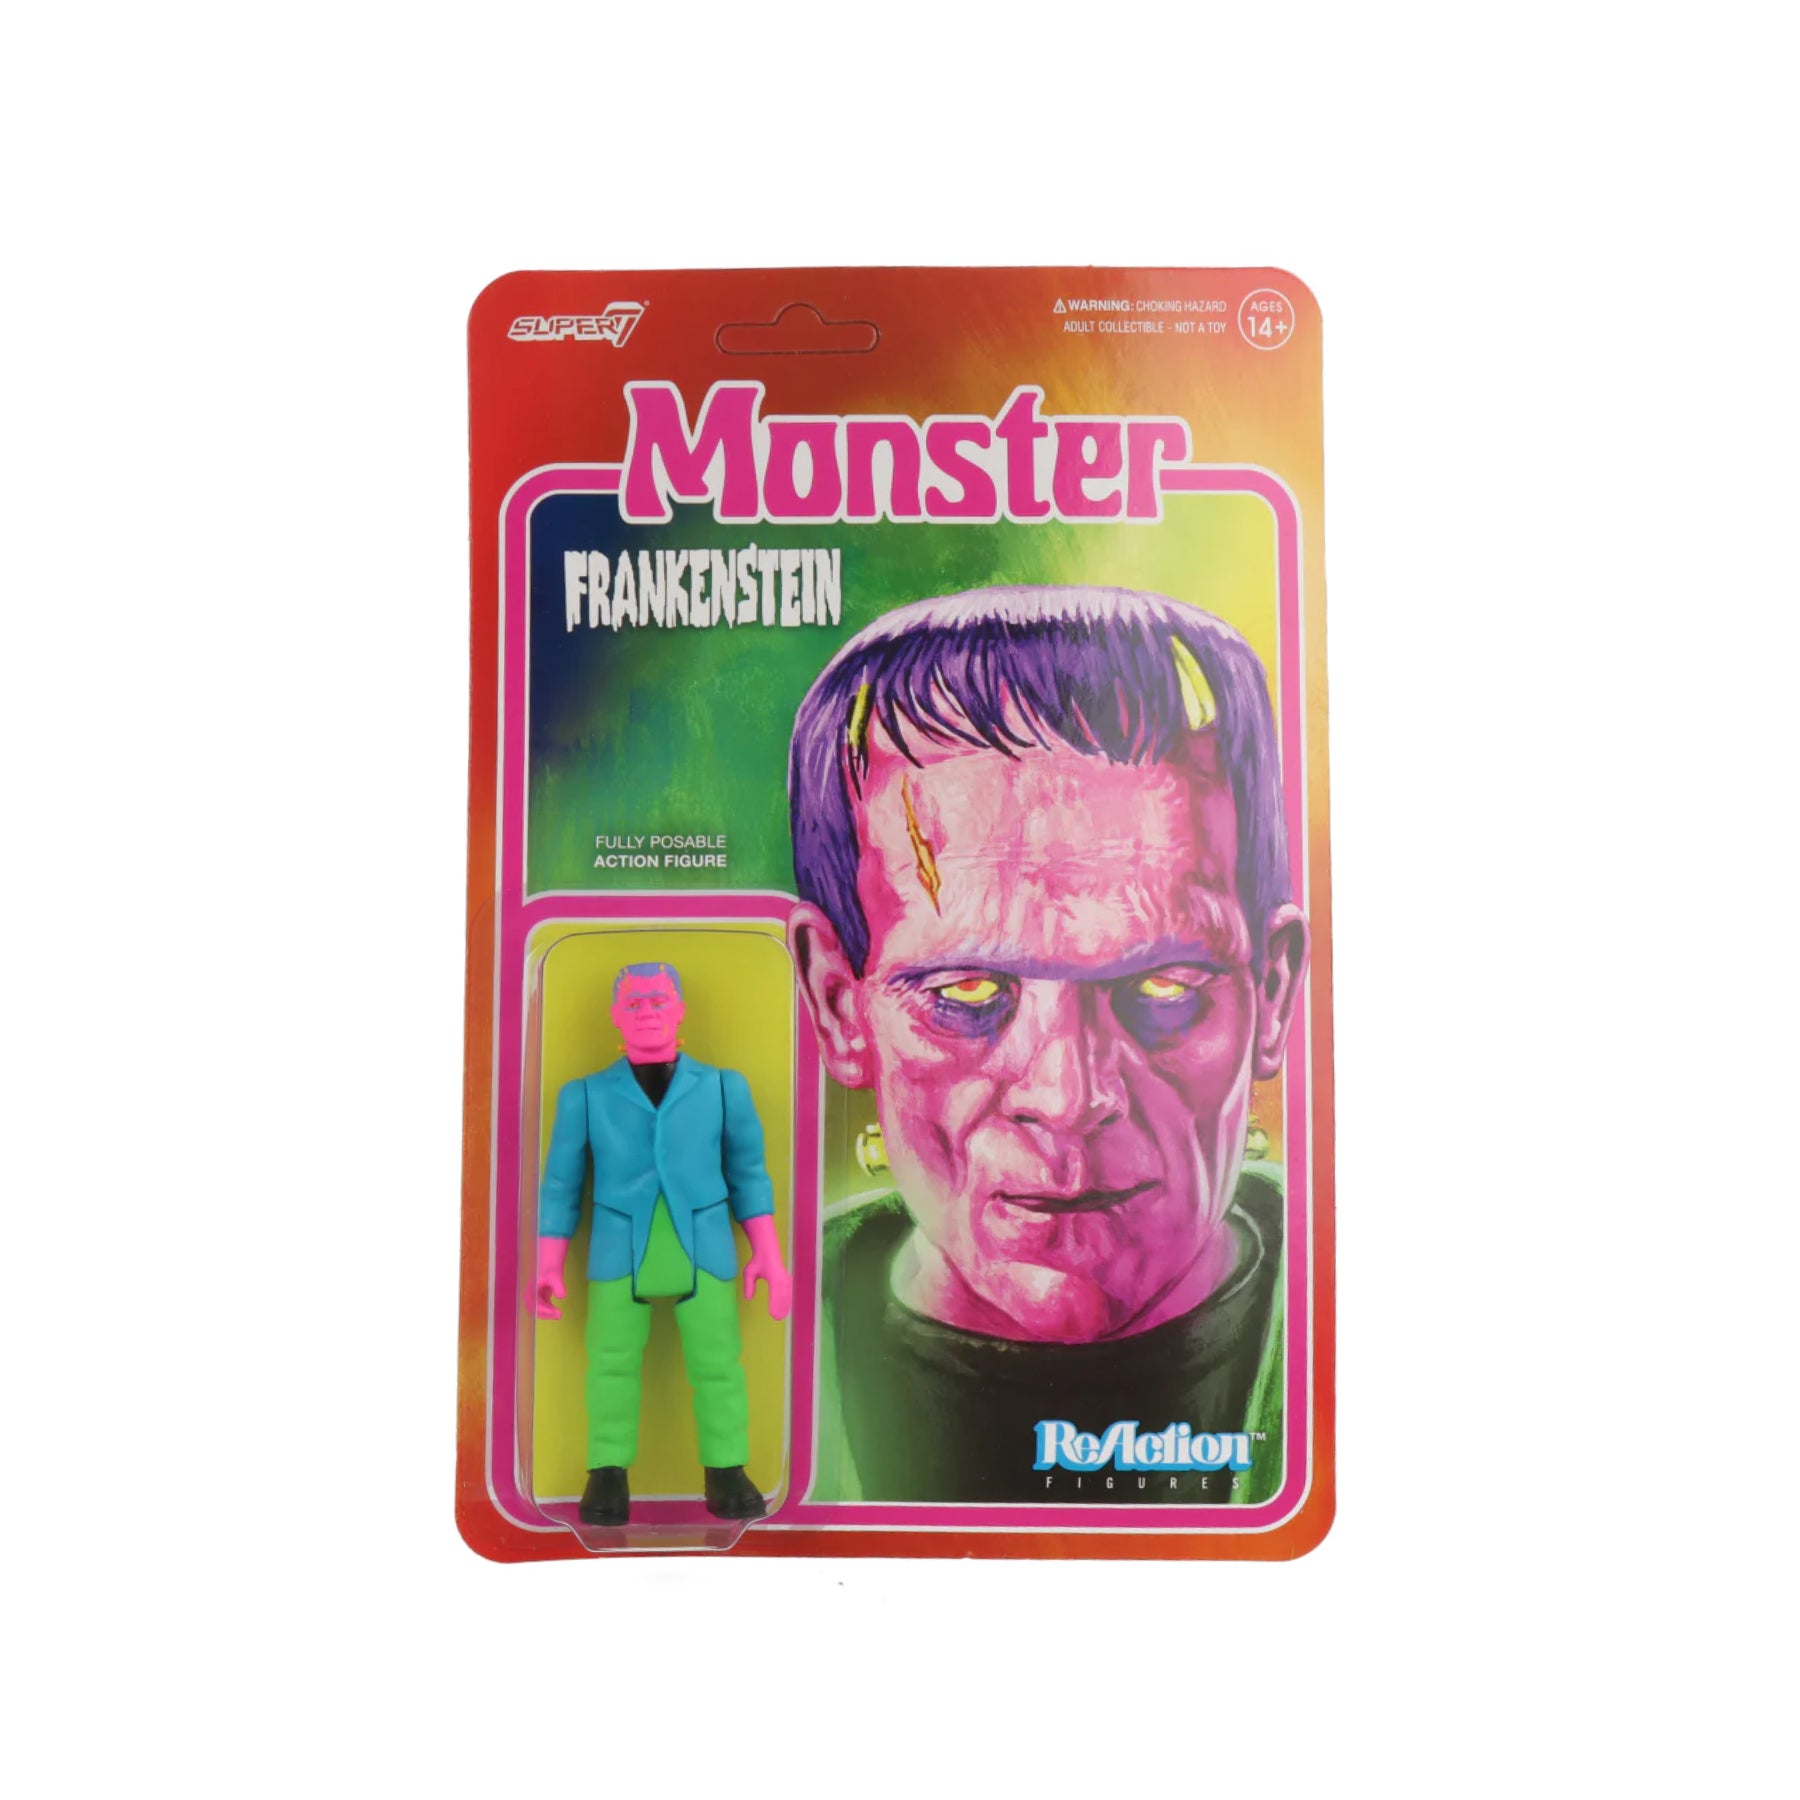 Frankenstein - ReAction Figures